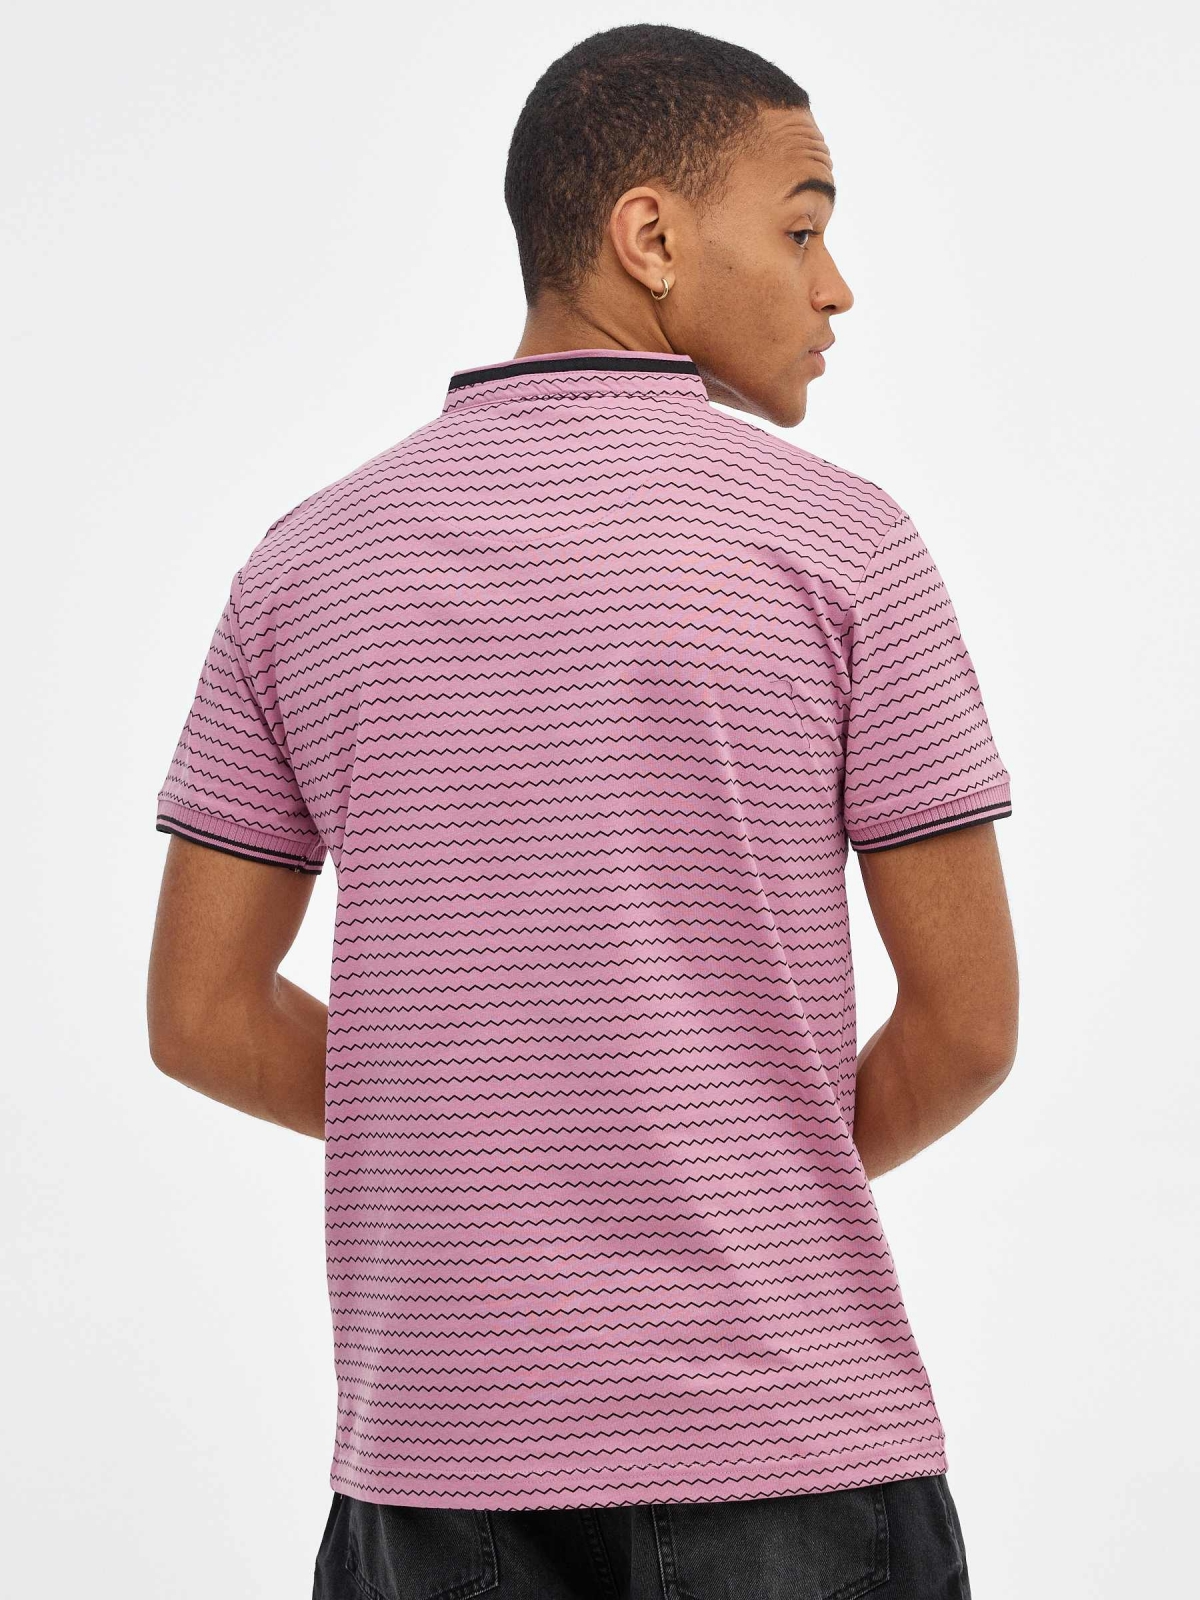 Geometric mao polo shirt purple middle back view